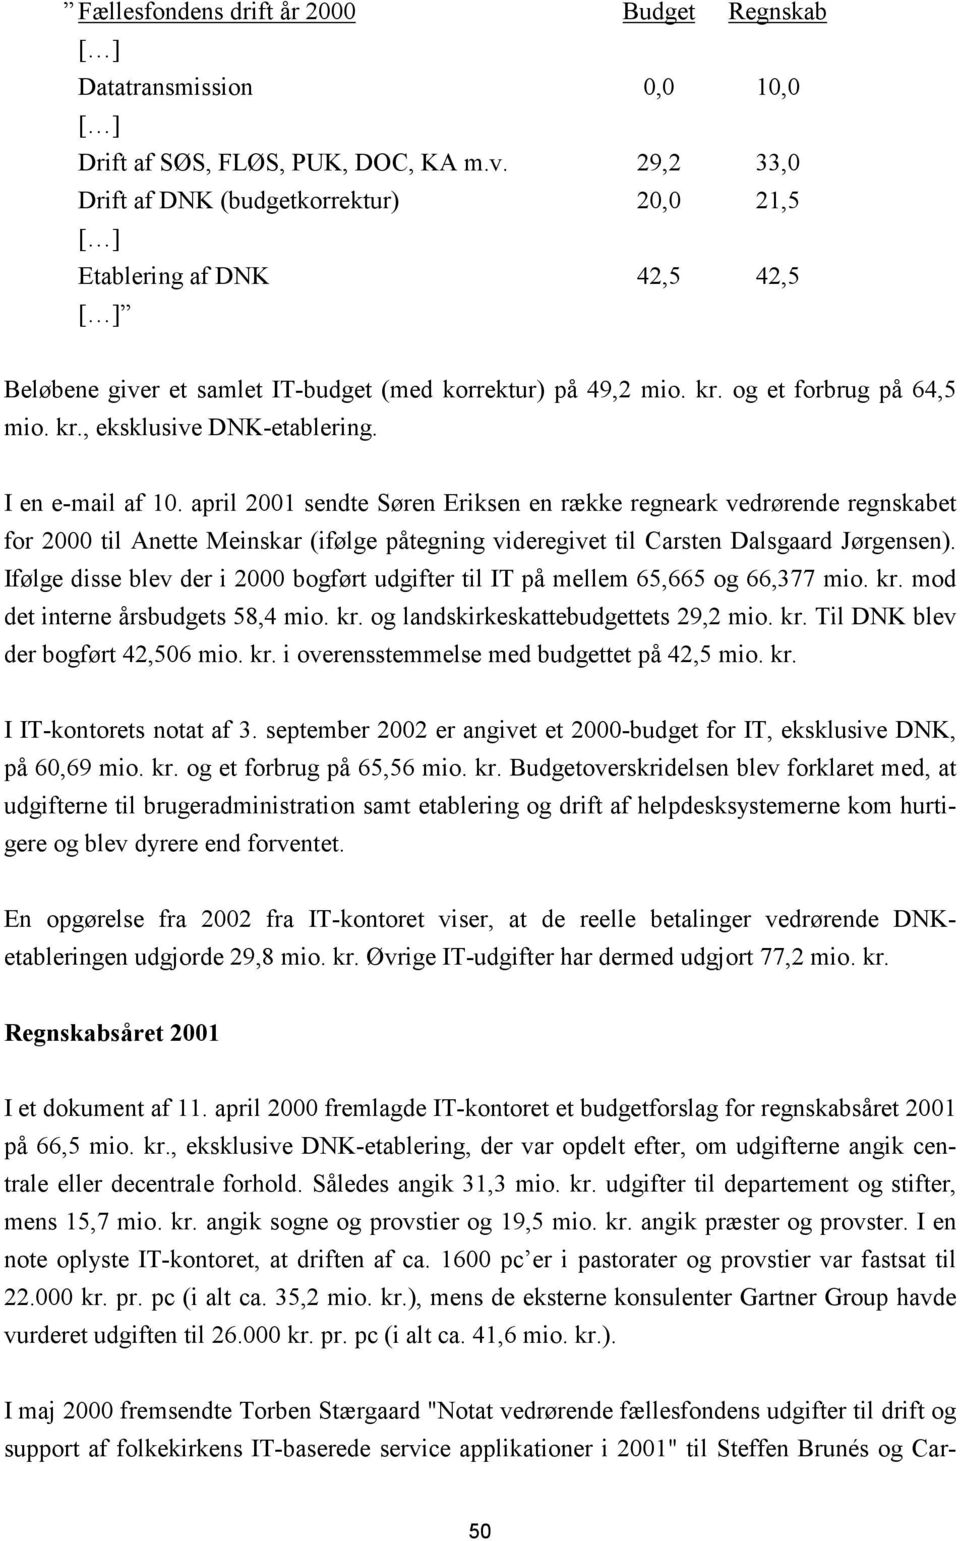 I en e-mail af 10. april 2001 sendte Søren Eriksen en række regneark vedrørende regnskabet for 2000 til Anette Meinskar (ifølge påtegning videregivet til Carsten Dalsgaard Jørgensen).